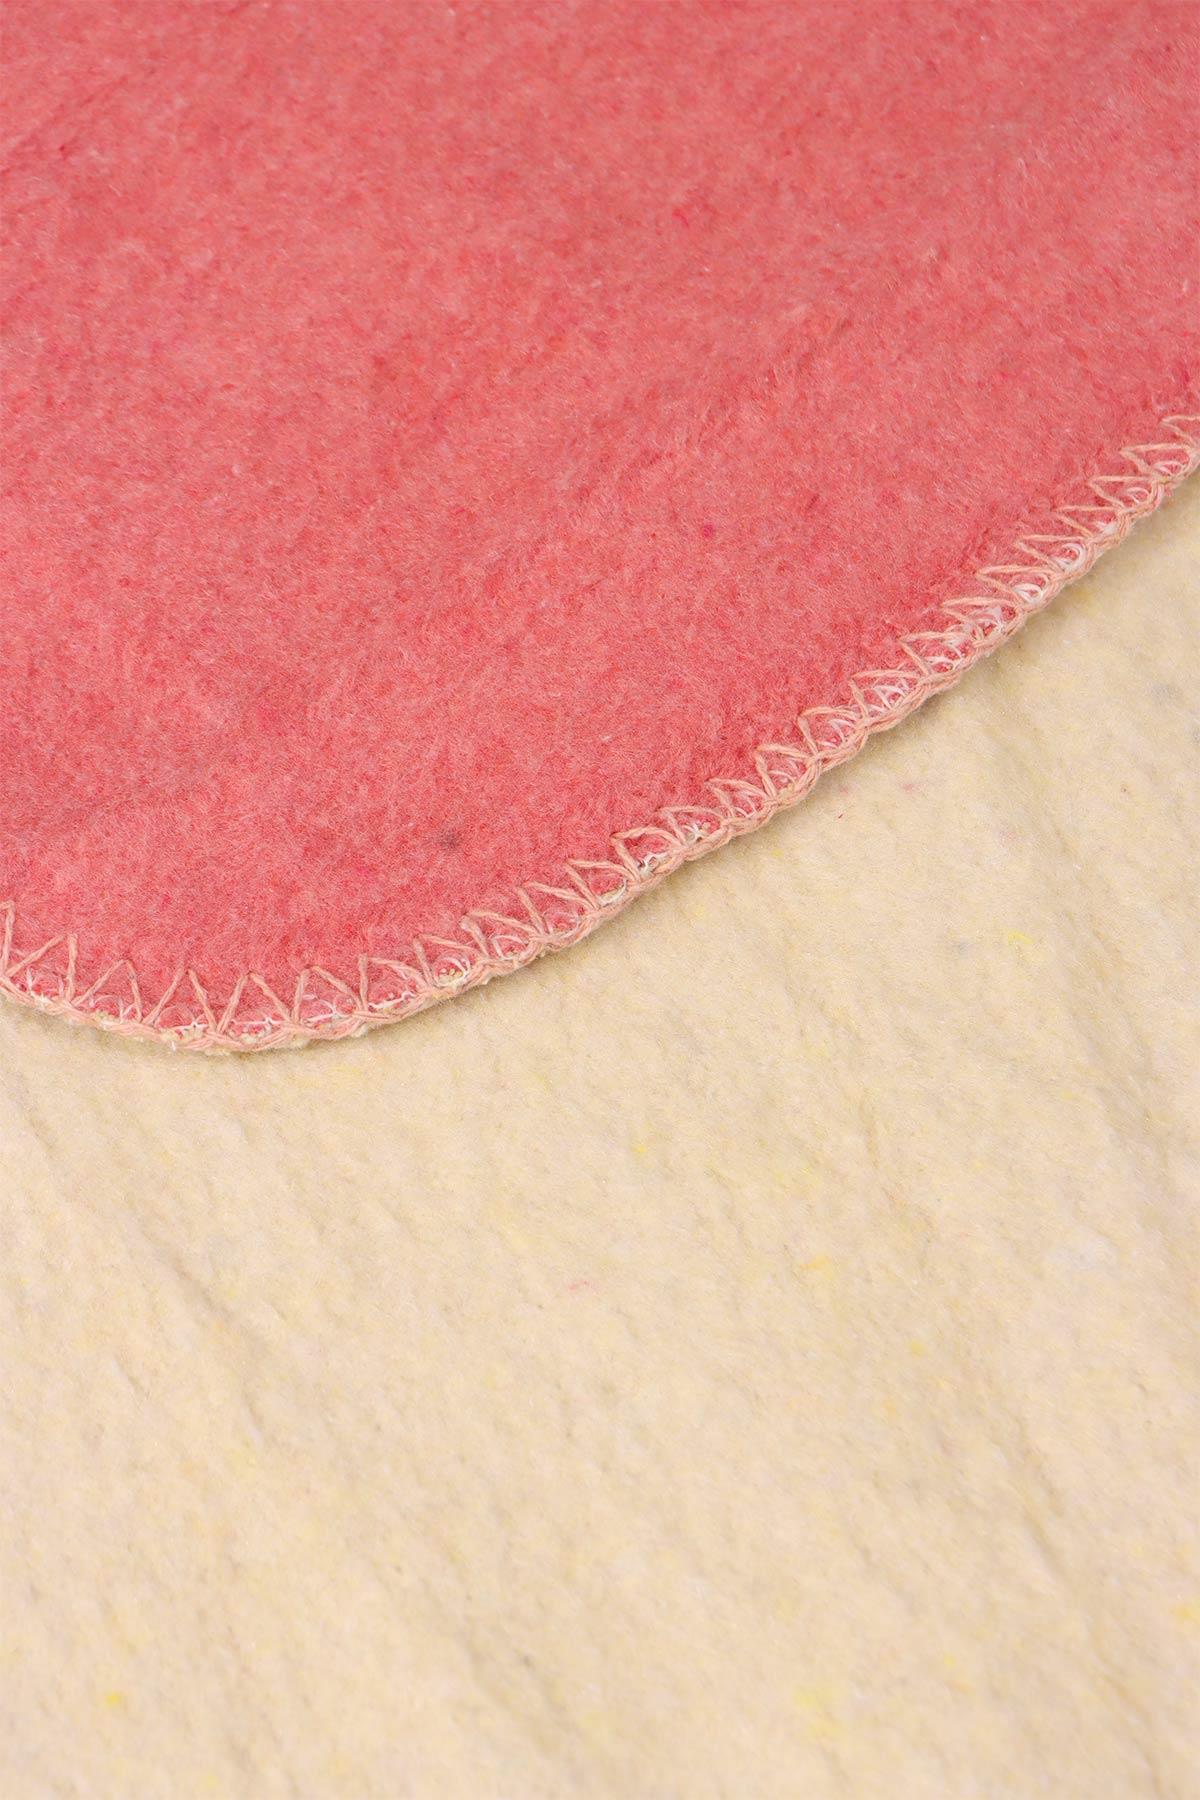 yesilhome cift kisilik pamuk battaniye cift tarafli battaniye pembe krem 120023.jpg